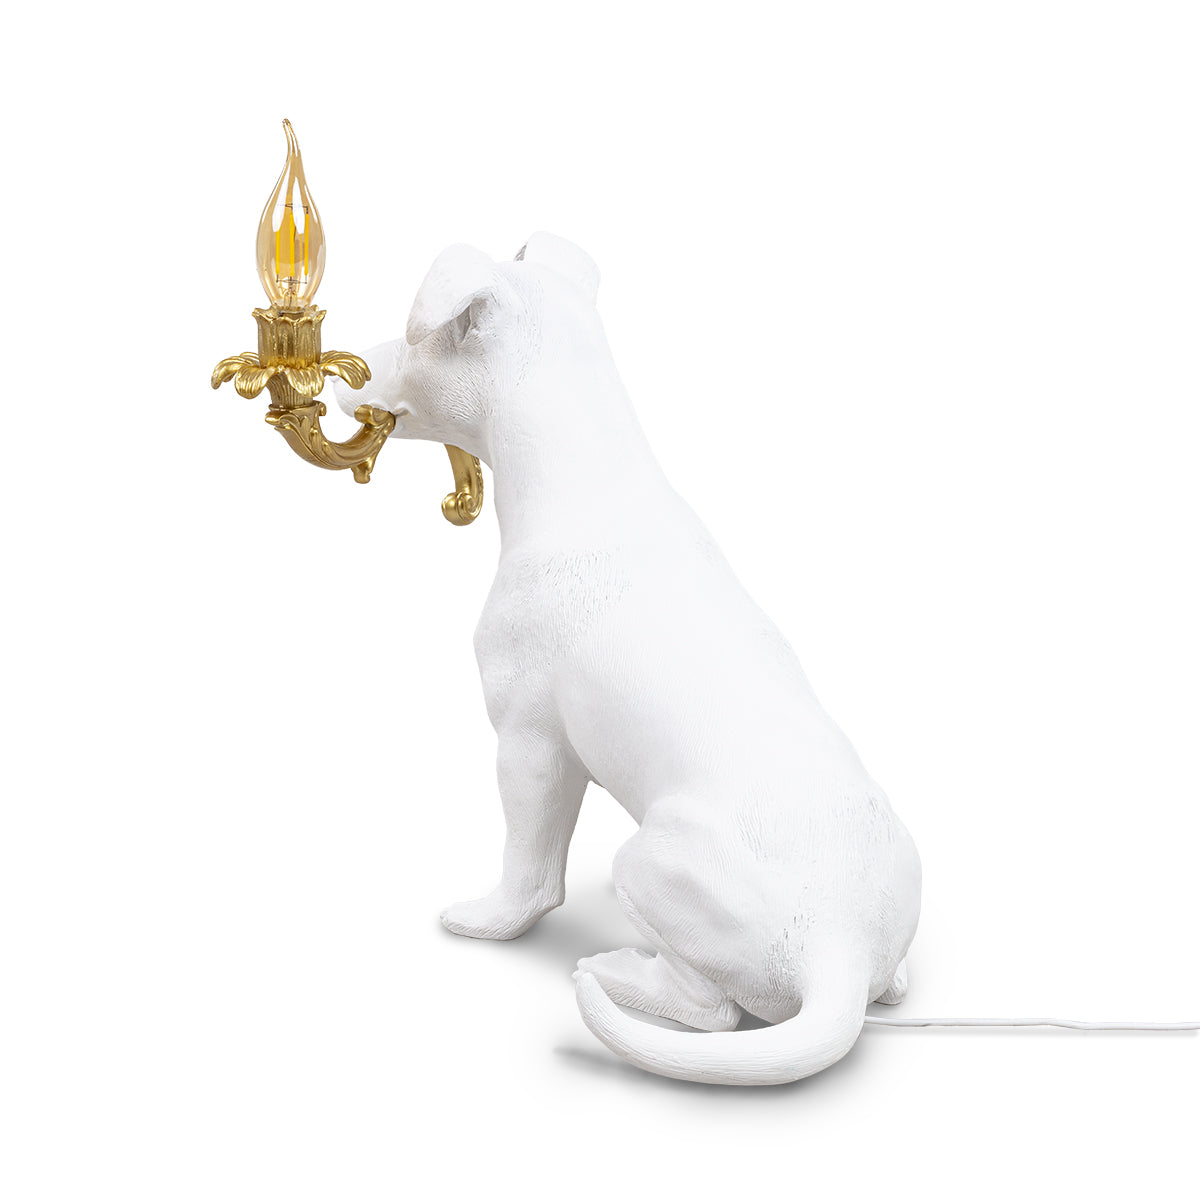 Tafellamp Rio is een eerbetoon aan de familiehond van Seletti. Een zesjarige Jack Russel met de naam Rio. De designer Marcantonio stelde zich deze hond rennend in een showroom voor, terwijl hij stukken van een kroonluchter afscheurt. Je kunt zelfs de draden nog zien! 